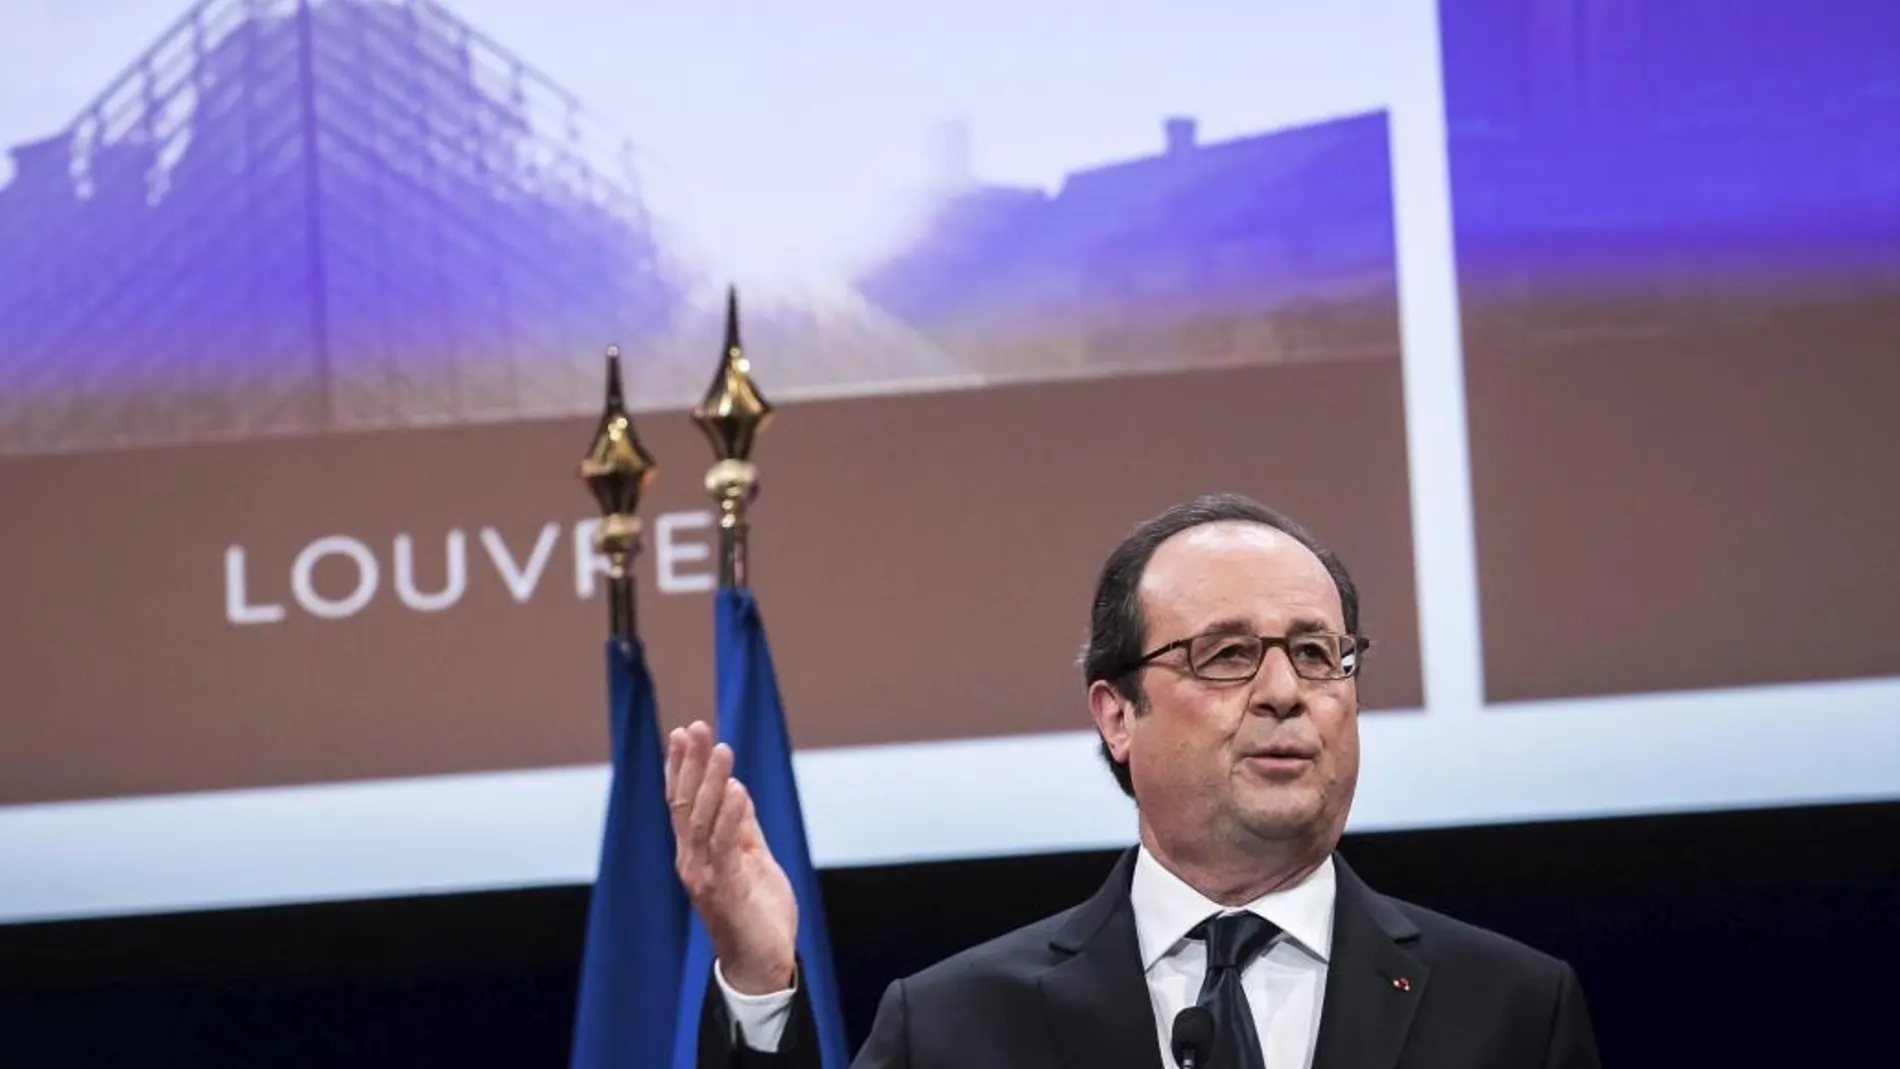 El presidente francés, François Hollande, pronuncia su discurso durante la inauguración de las reformas realizadas en varios espacios del Museo del Louvre.